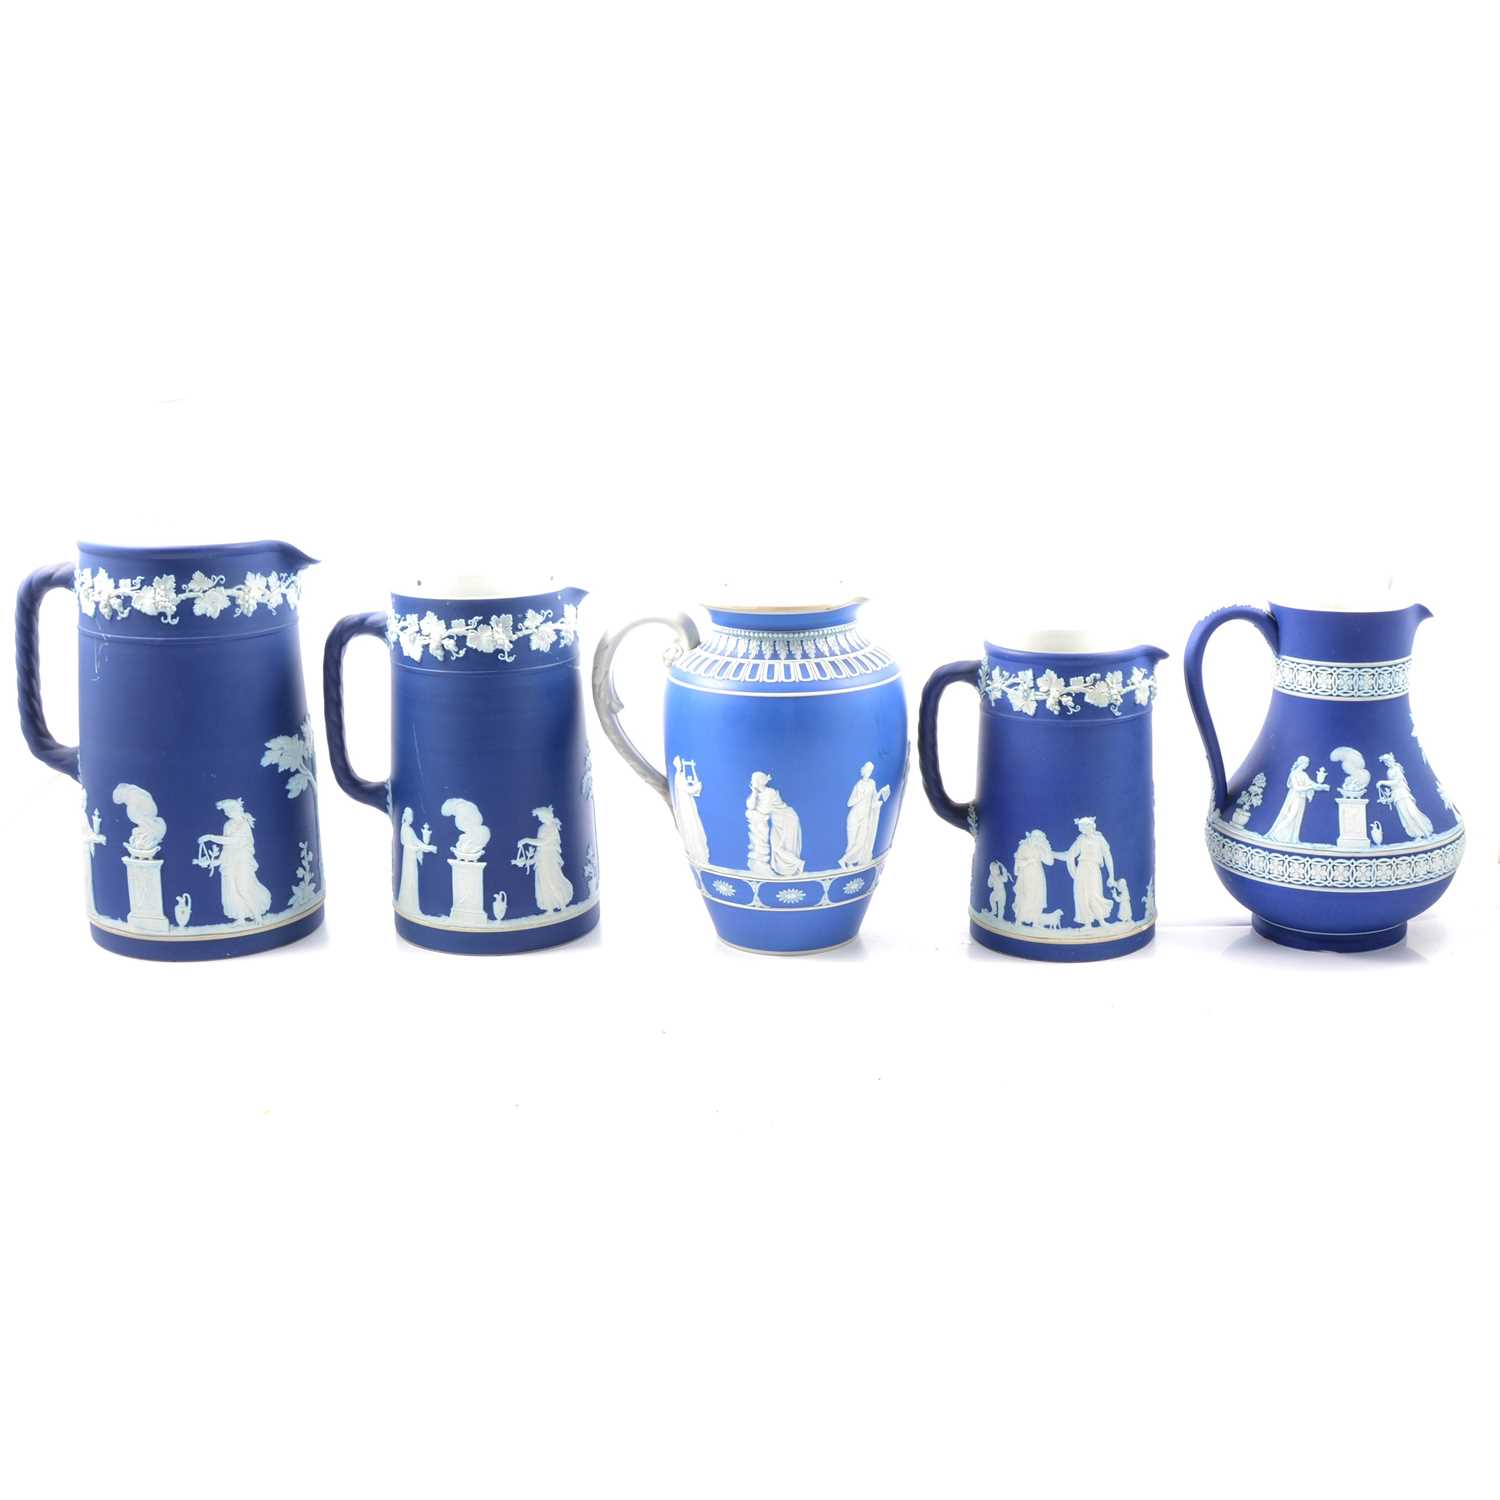 Lot 10 - Five blue jasperware jugs